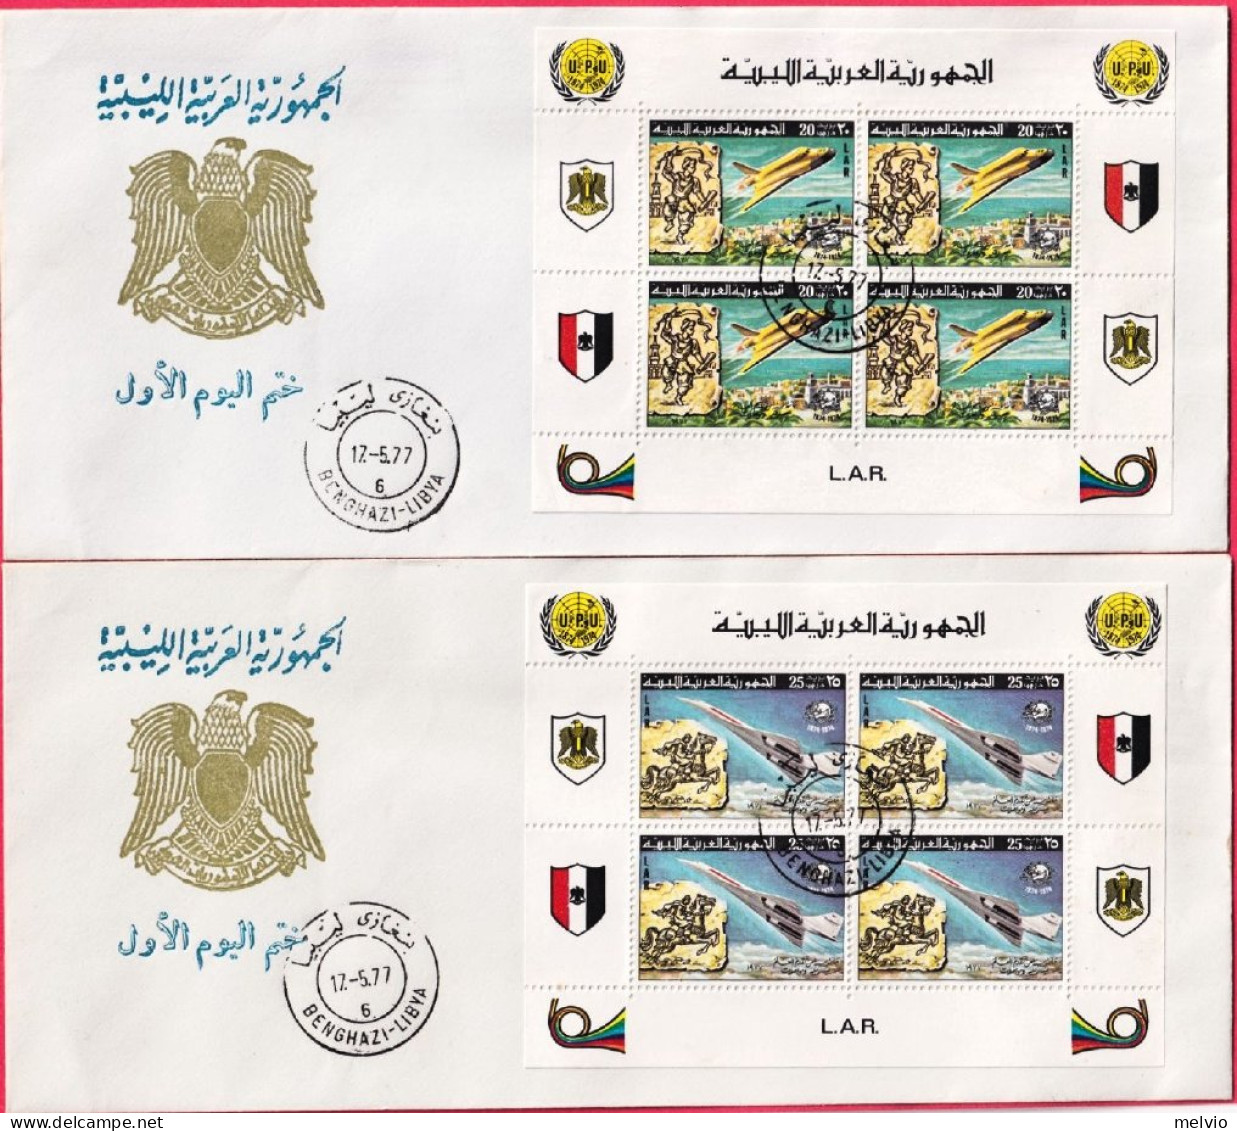 1977-Libia Tre Rari Minifogli Centenario UPU Su Tre Fdc, - Libya